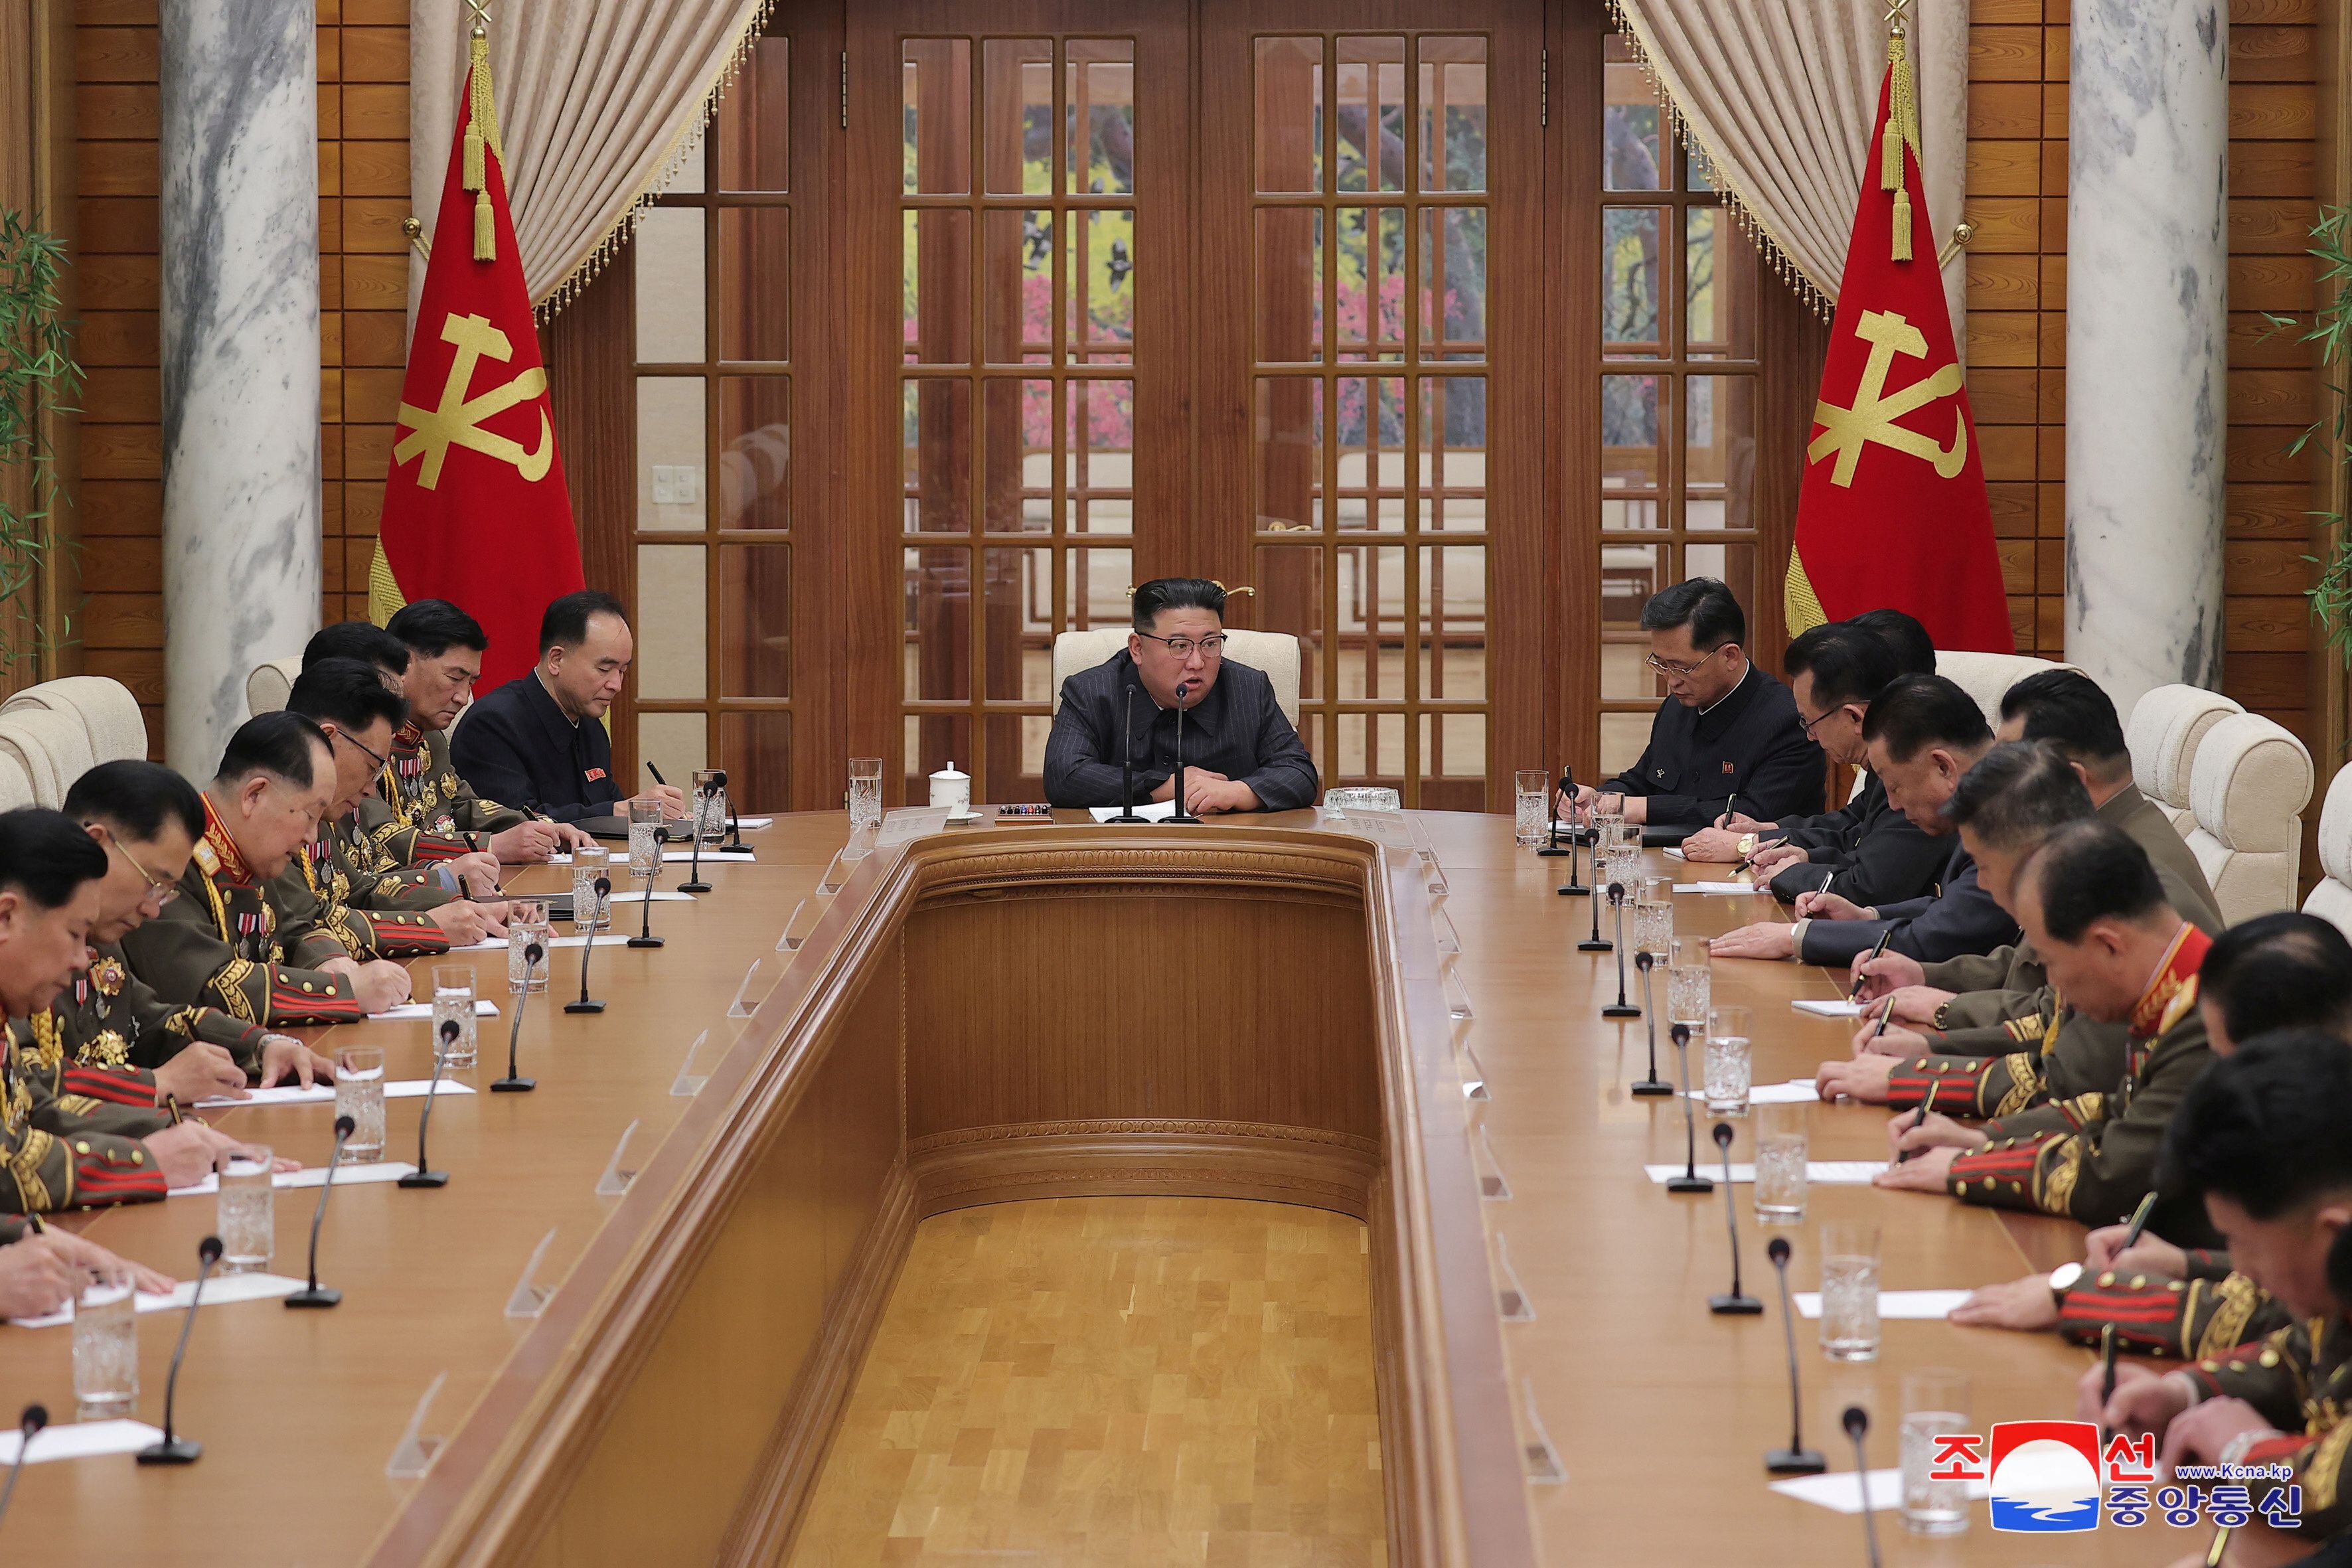 El régimen de Kim Jong-un aprobó el uso de elementos de guerra contra los ejercicios conjuntos de EEUU y Corea del Sur. (REUTERS)